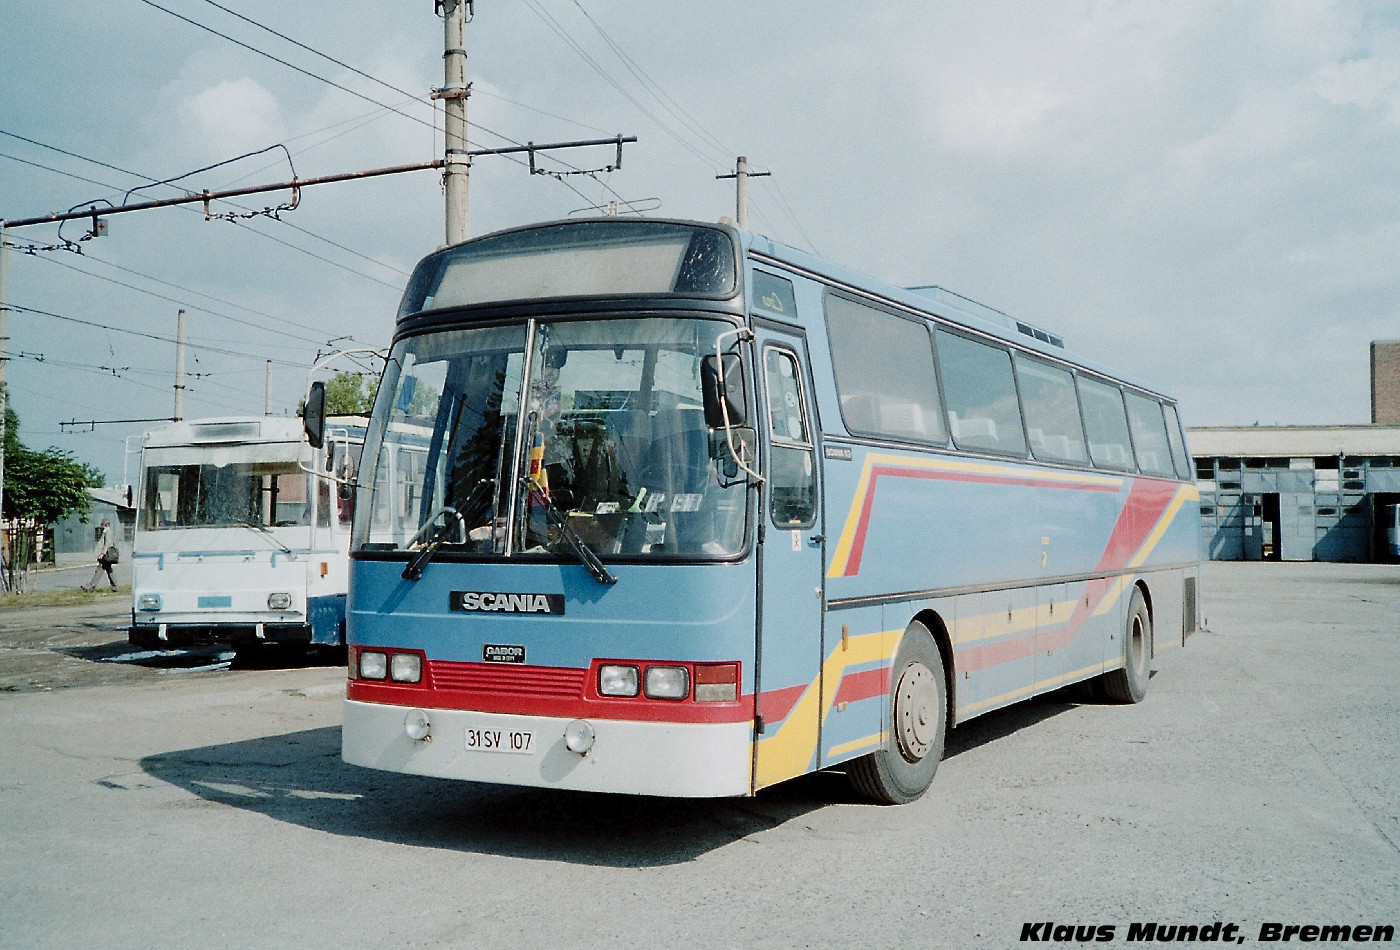 Scania K113 / Ghabbour #31 SV 107